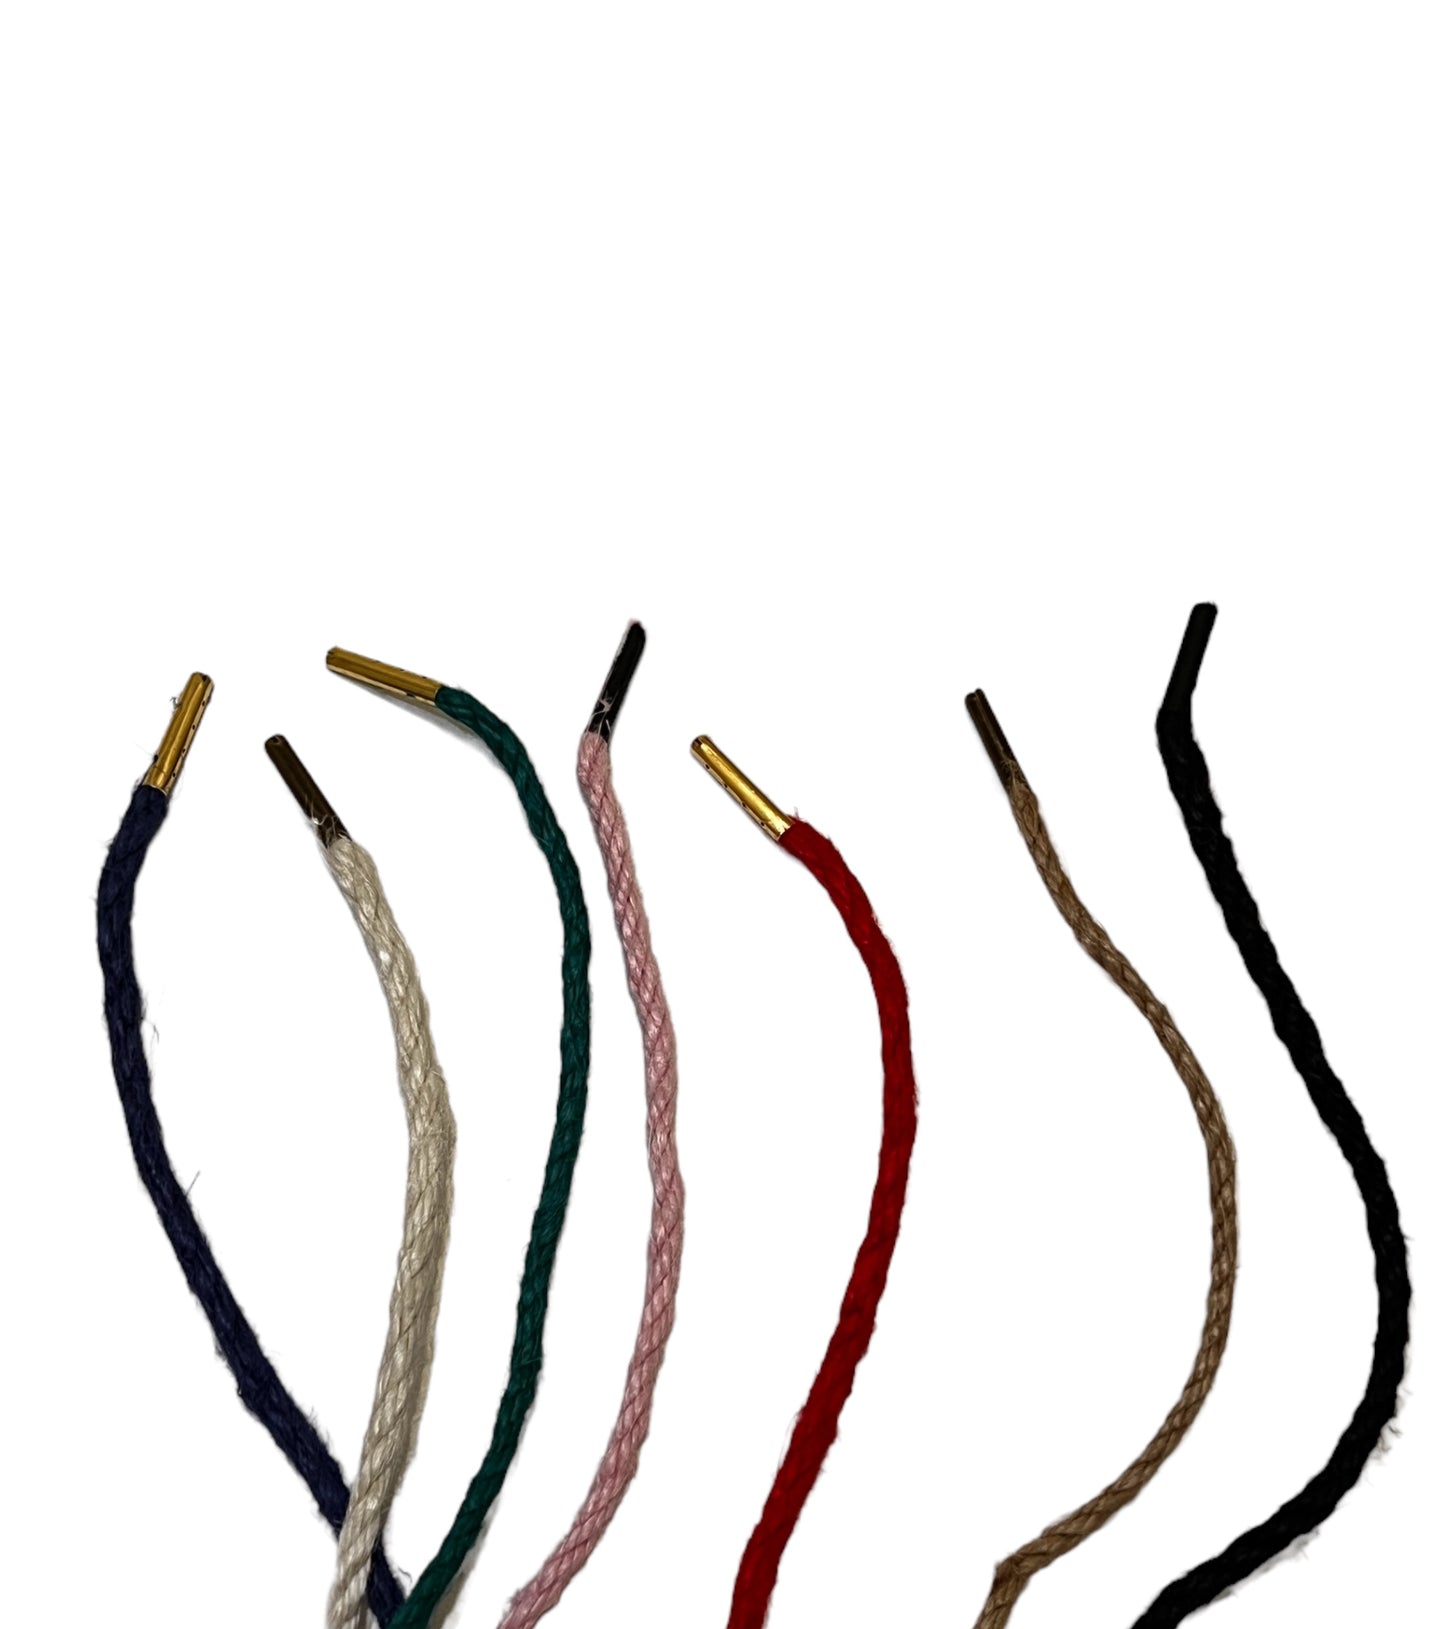 Svensktillverkade shibari bondage rep i jute, 10 meter. Välj bland många färger.